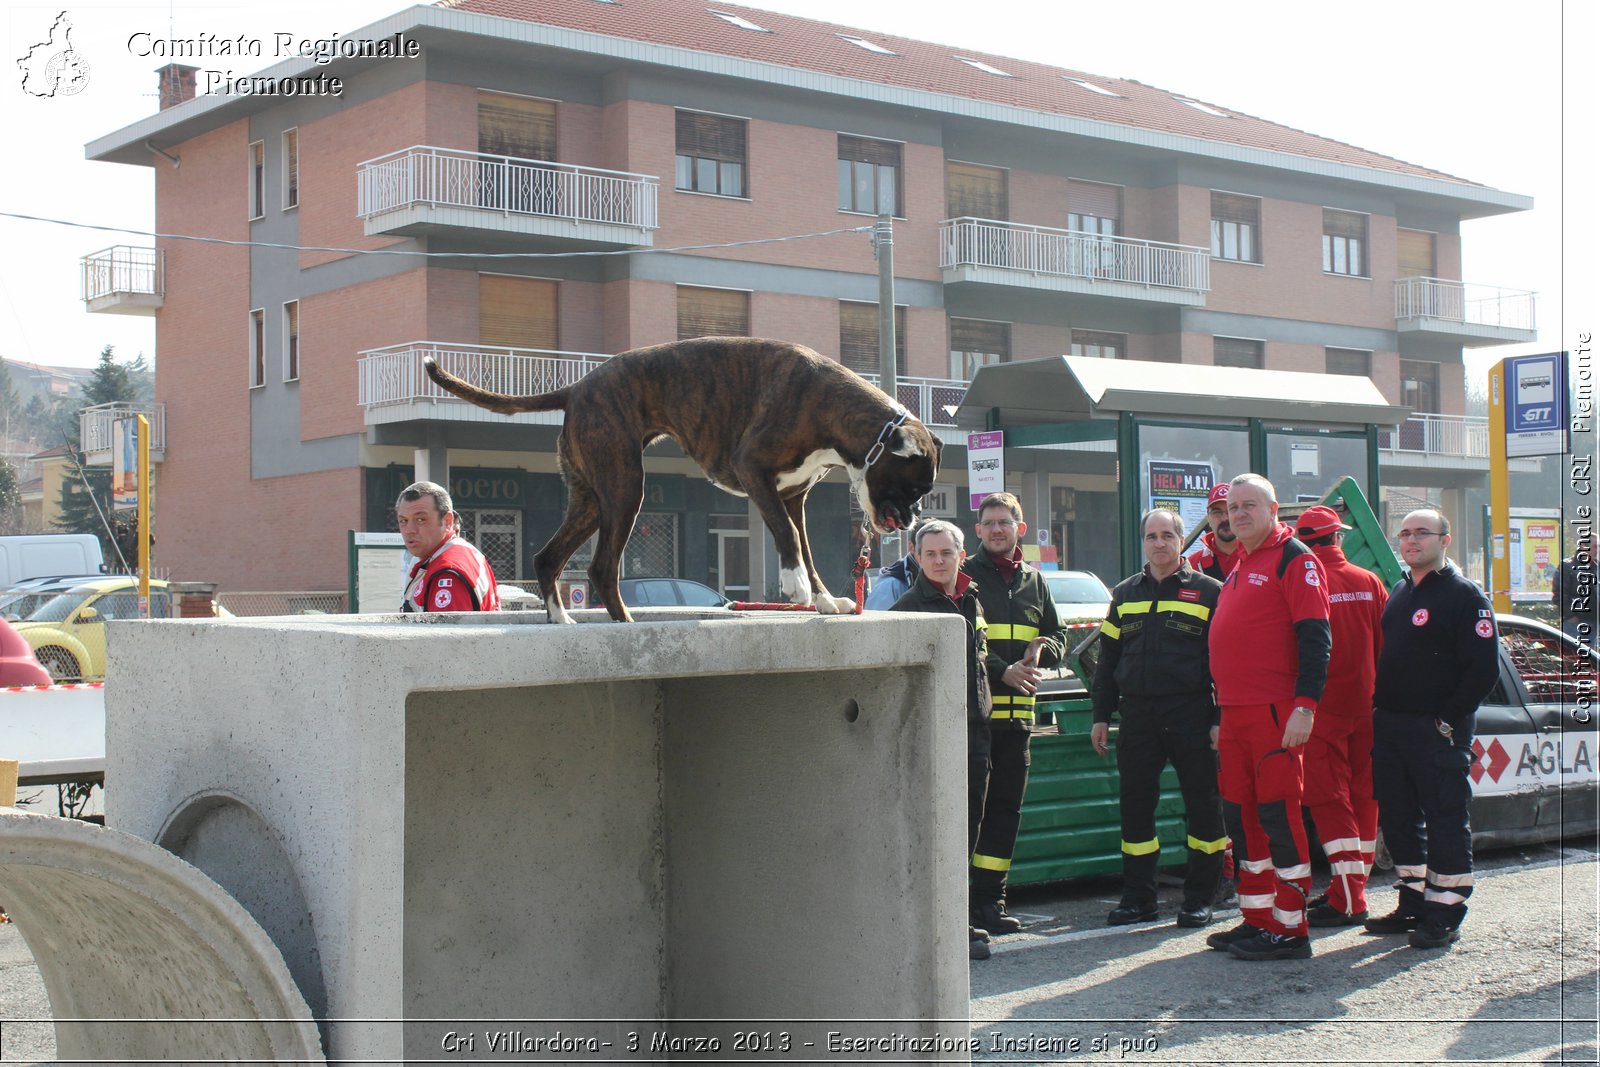 Cri Villardora - 3 Marzo 2013 - Esercitazione Insieme si pu - Croce Rossa Italiana - Comitato Regionale del Piemonte